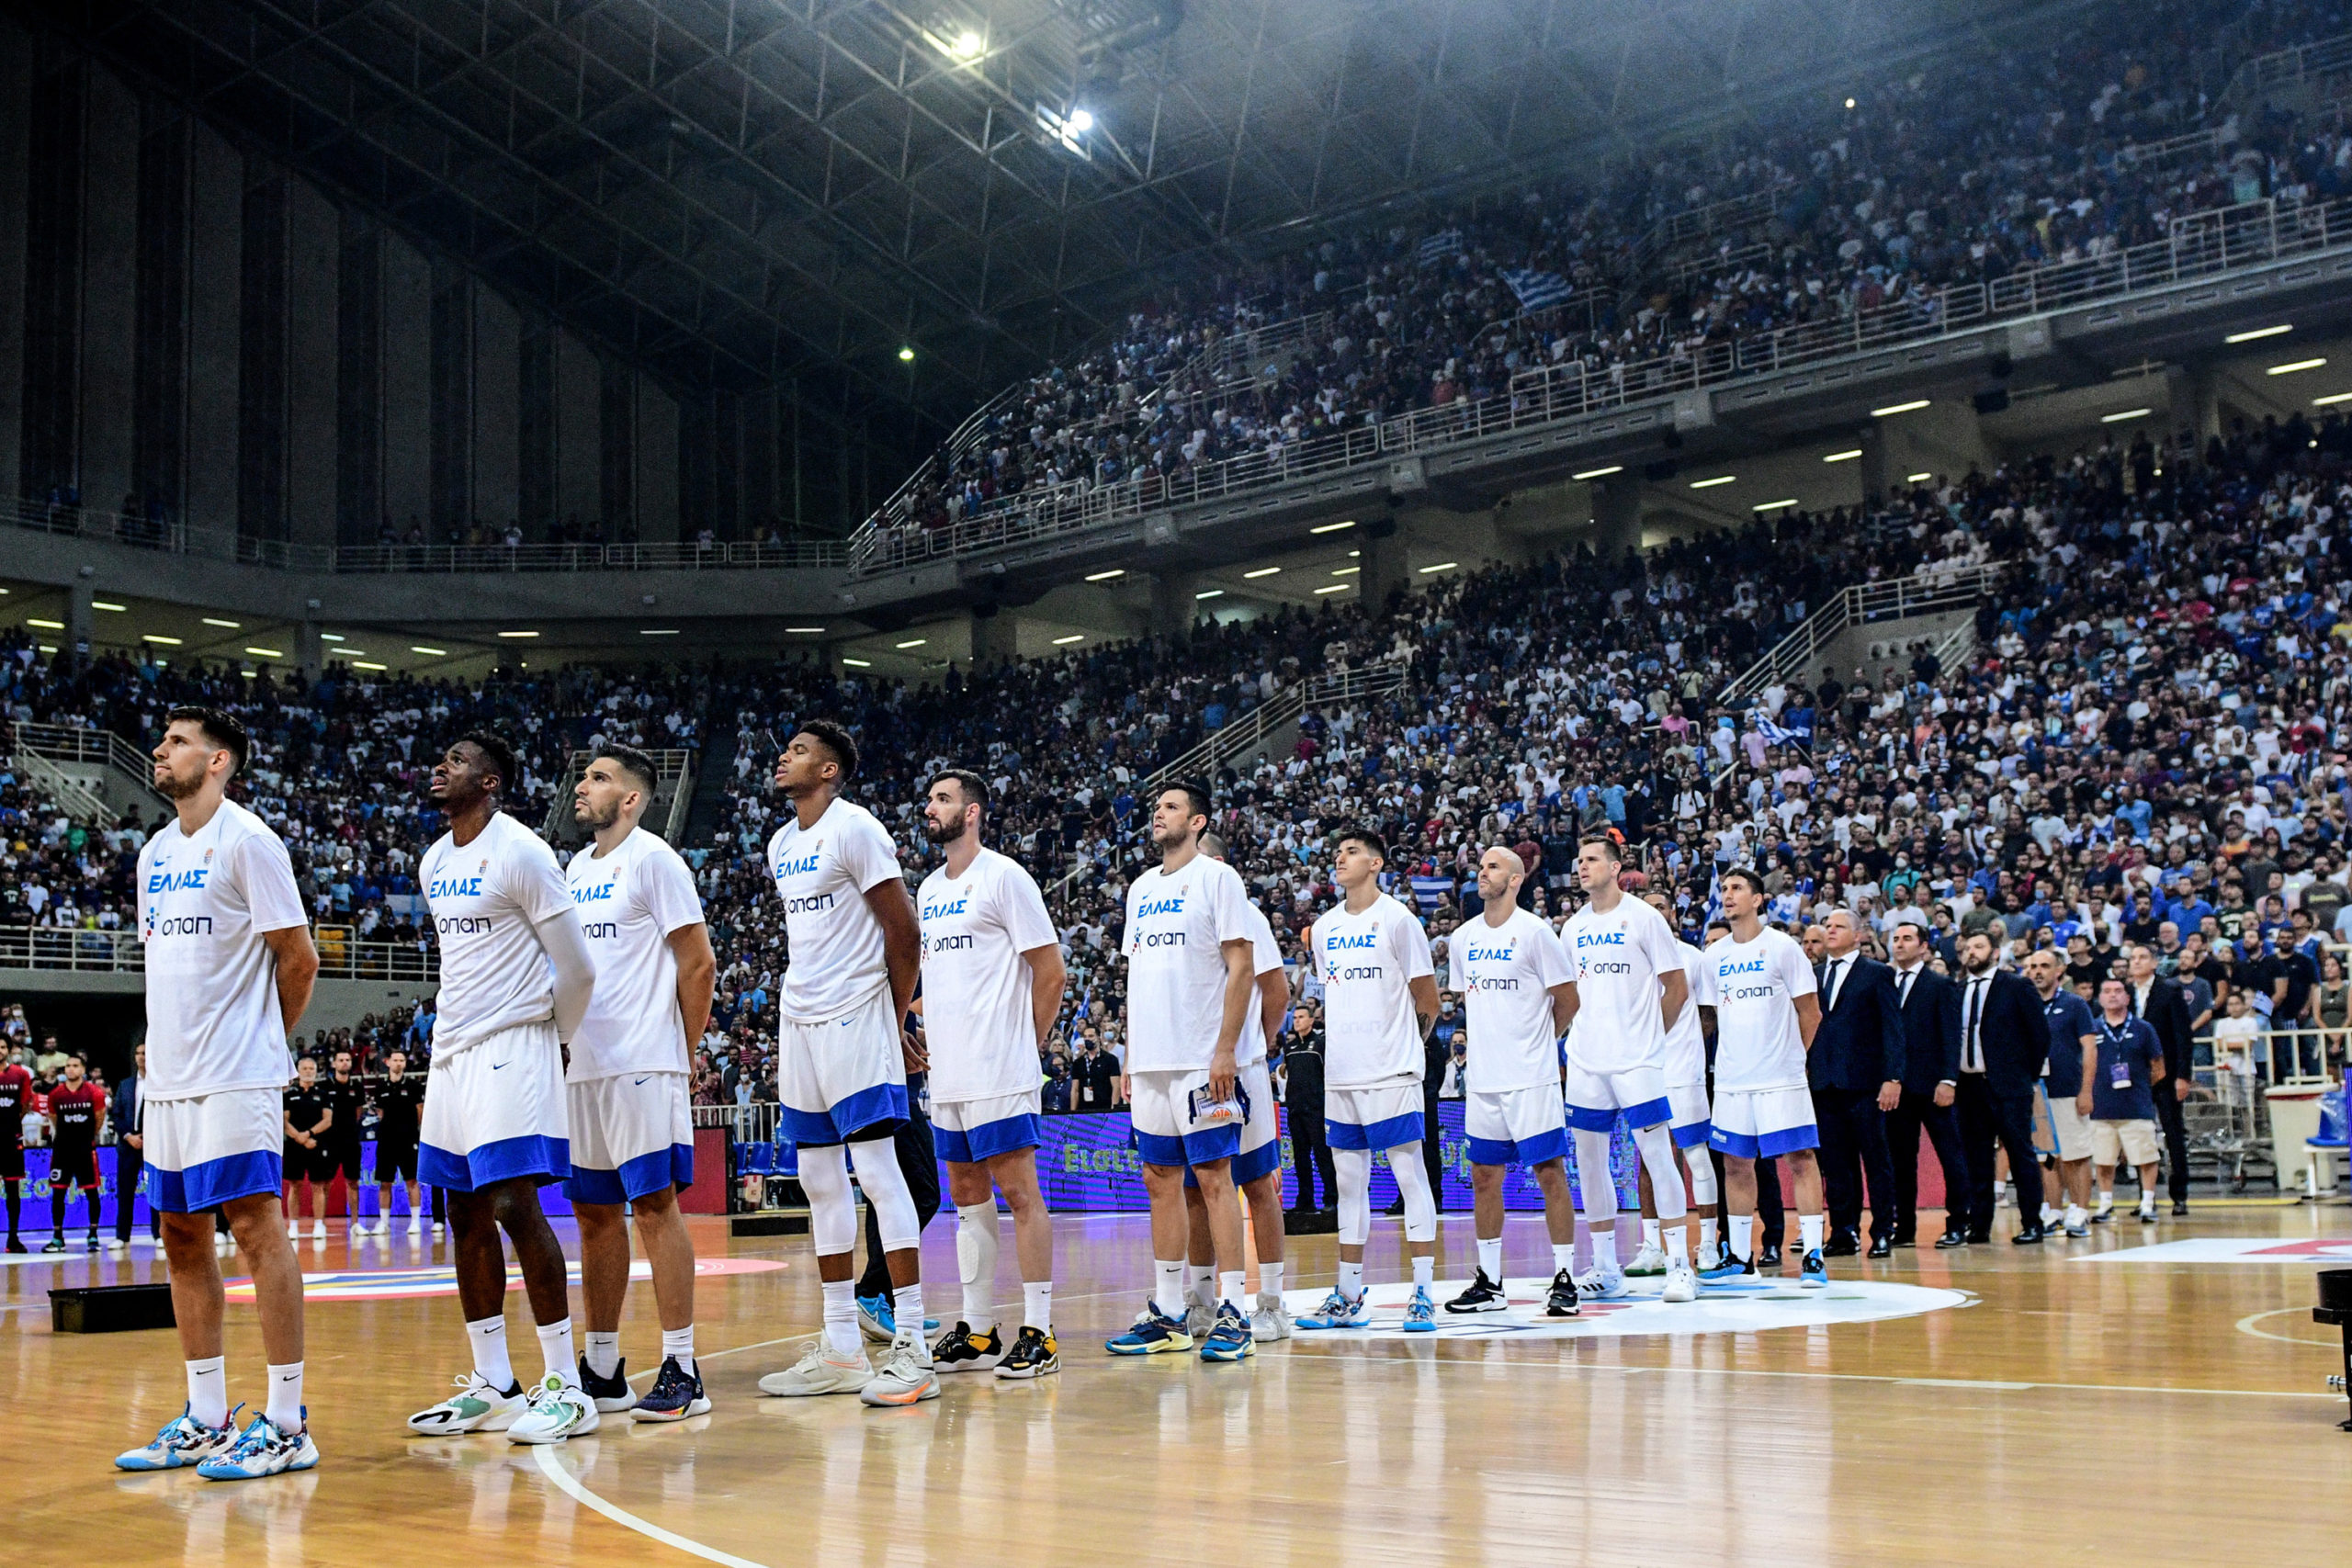 Πανέτοιμη για το Eurobasket η Εθνική: Στην ΕΡΤ μιλούν Παπανικολάου, Παπαπέτρου και Ιτούδης – Δείτε το πρόγραμμα των αγώνων